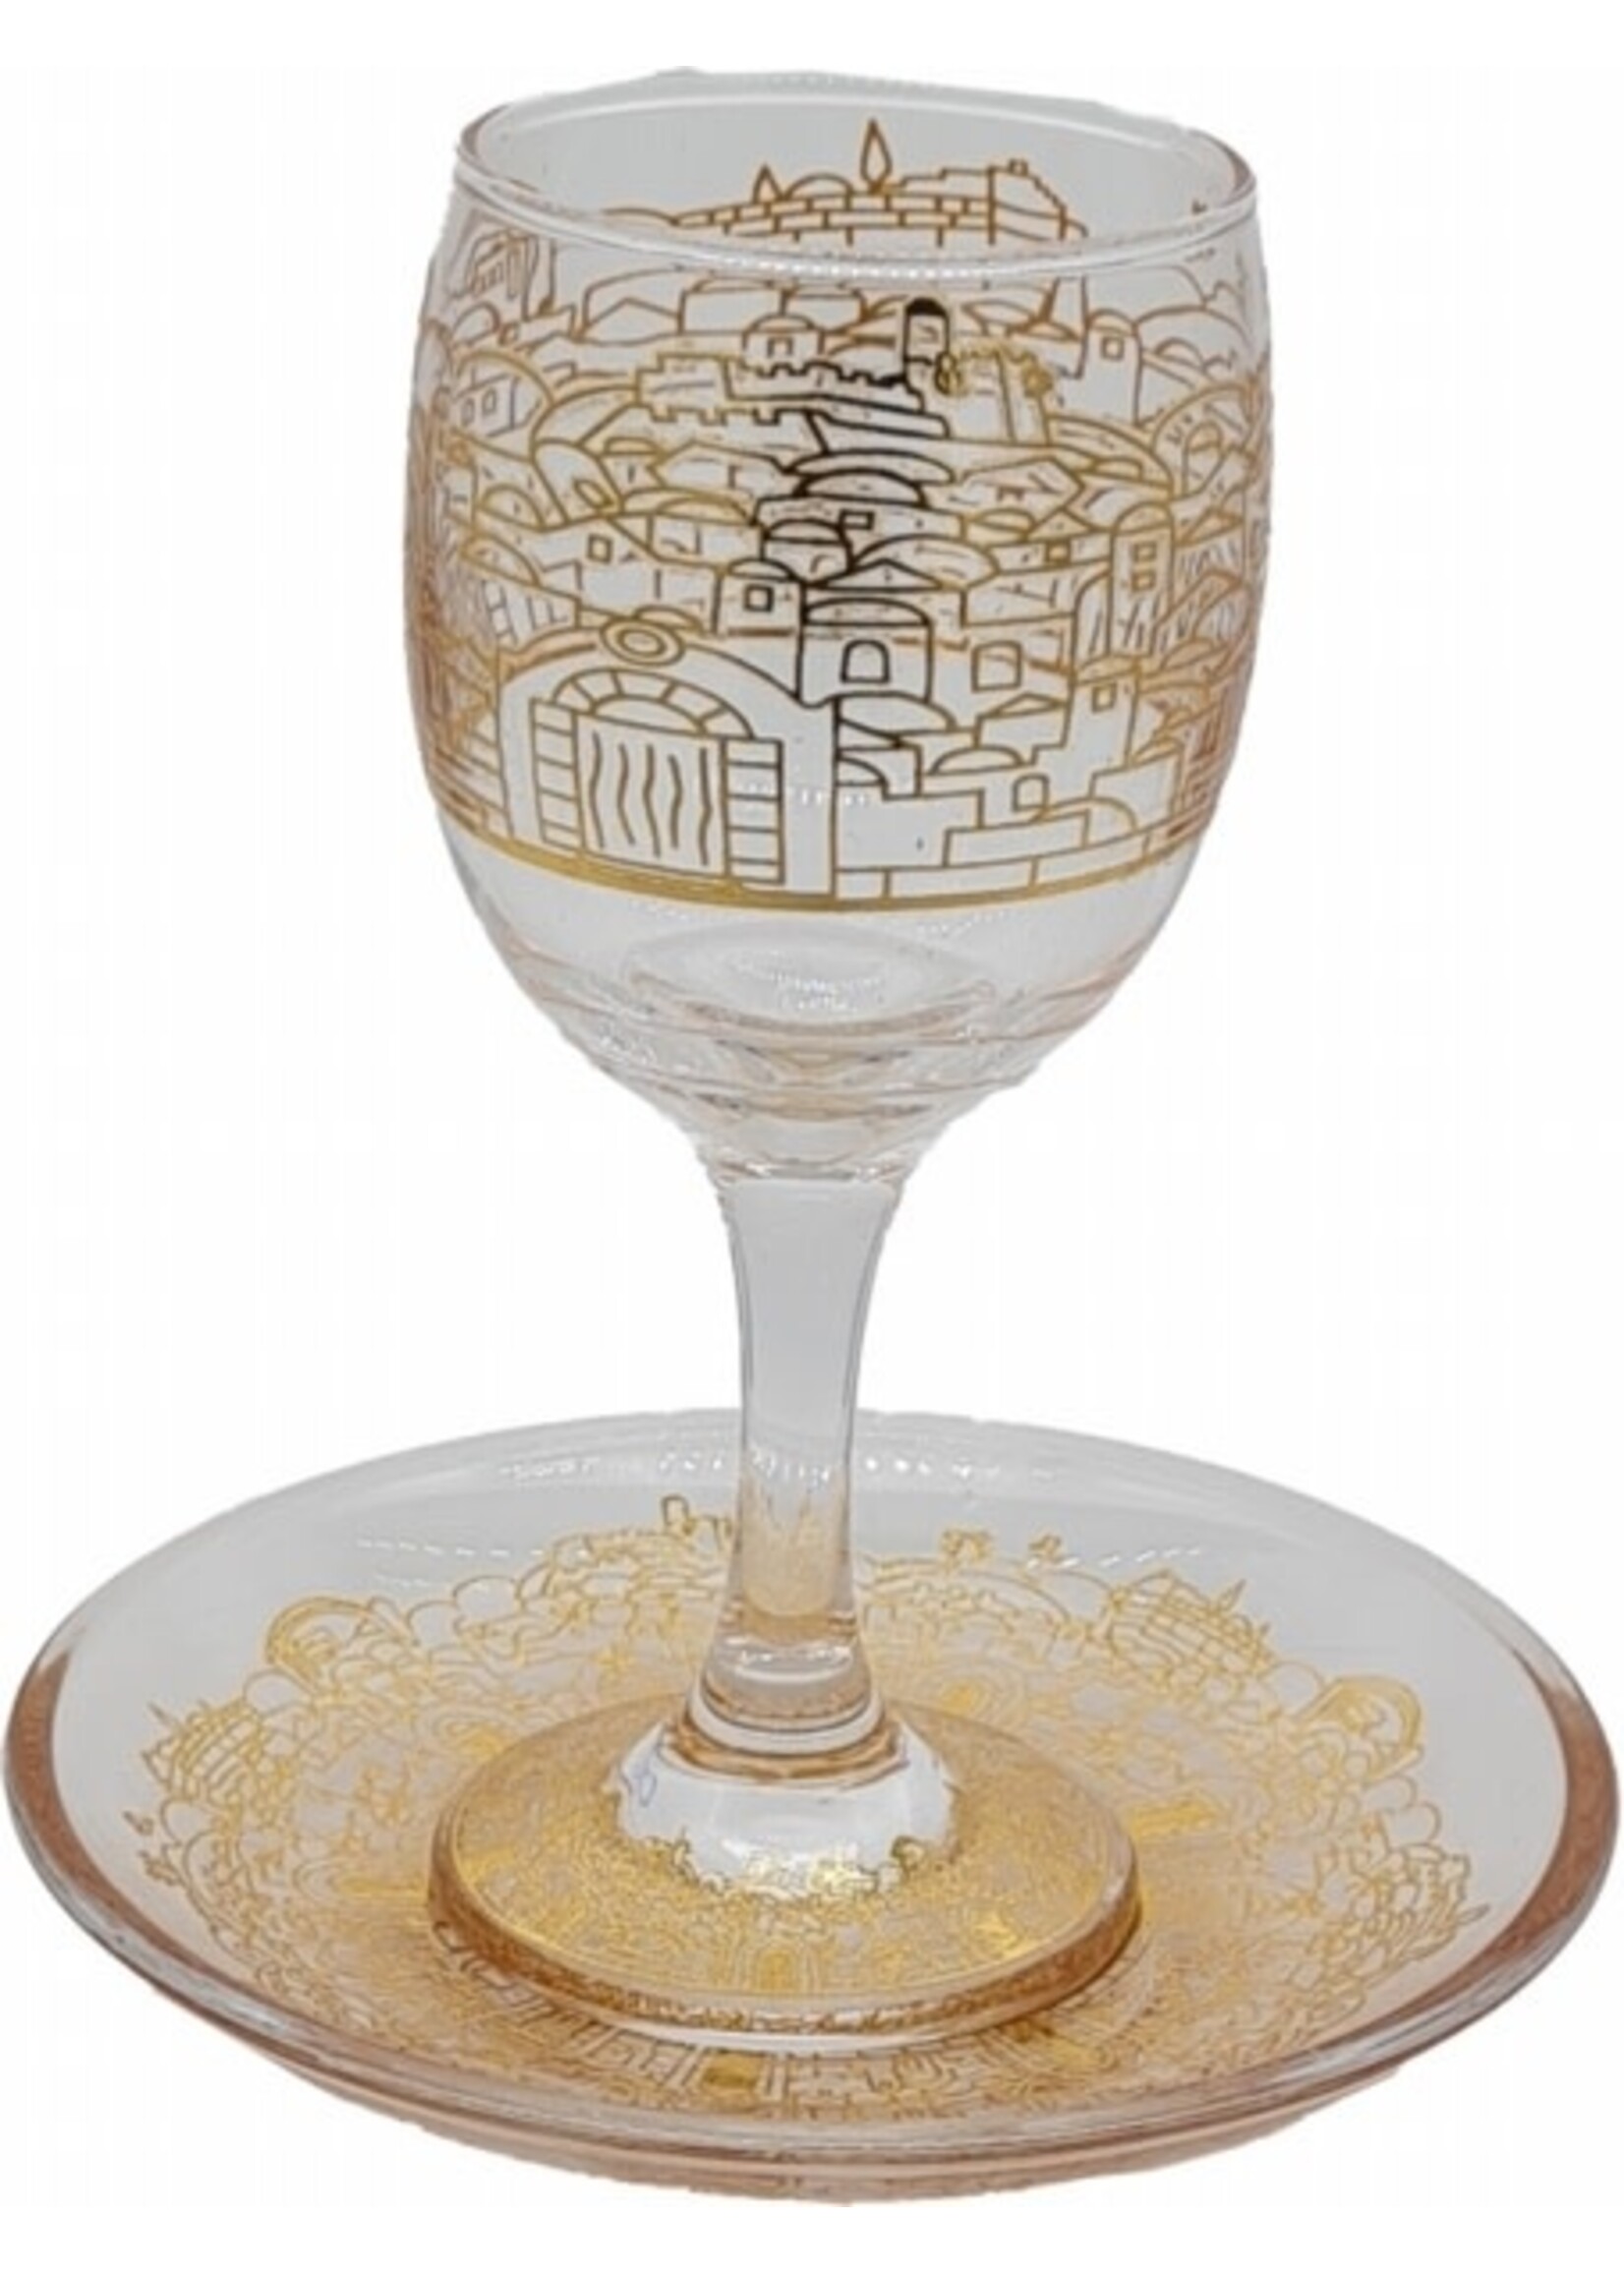 KIDDUSH CUP STEM GLASS - JERUSALEM GOLD